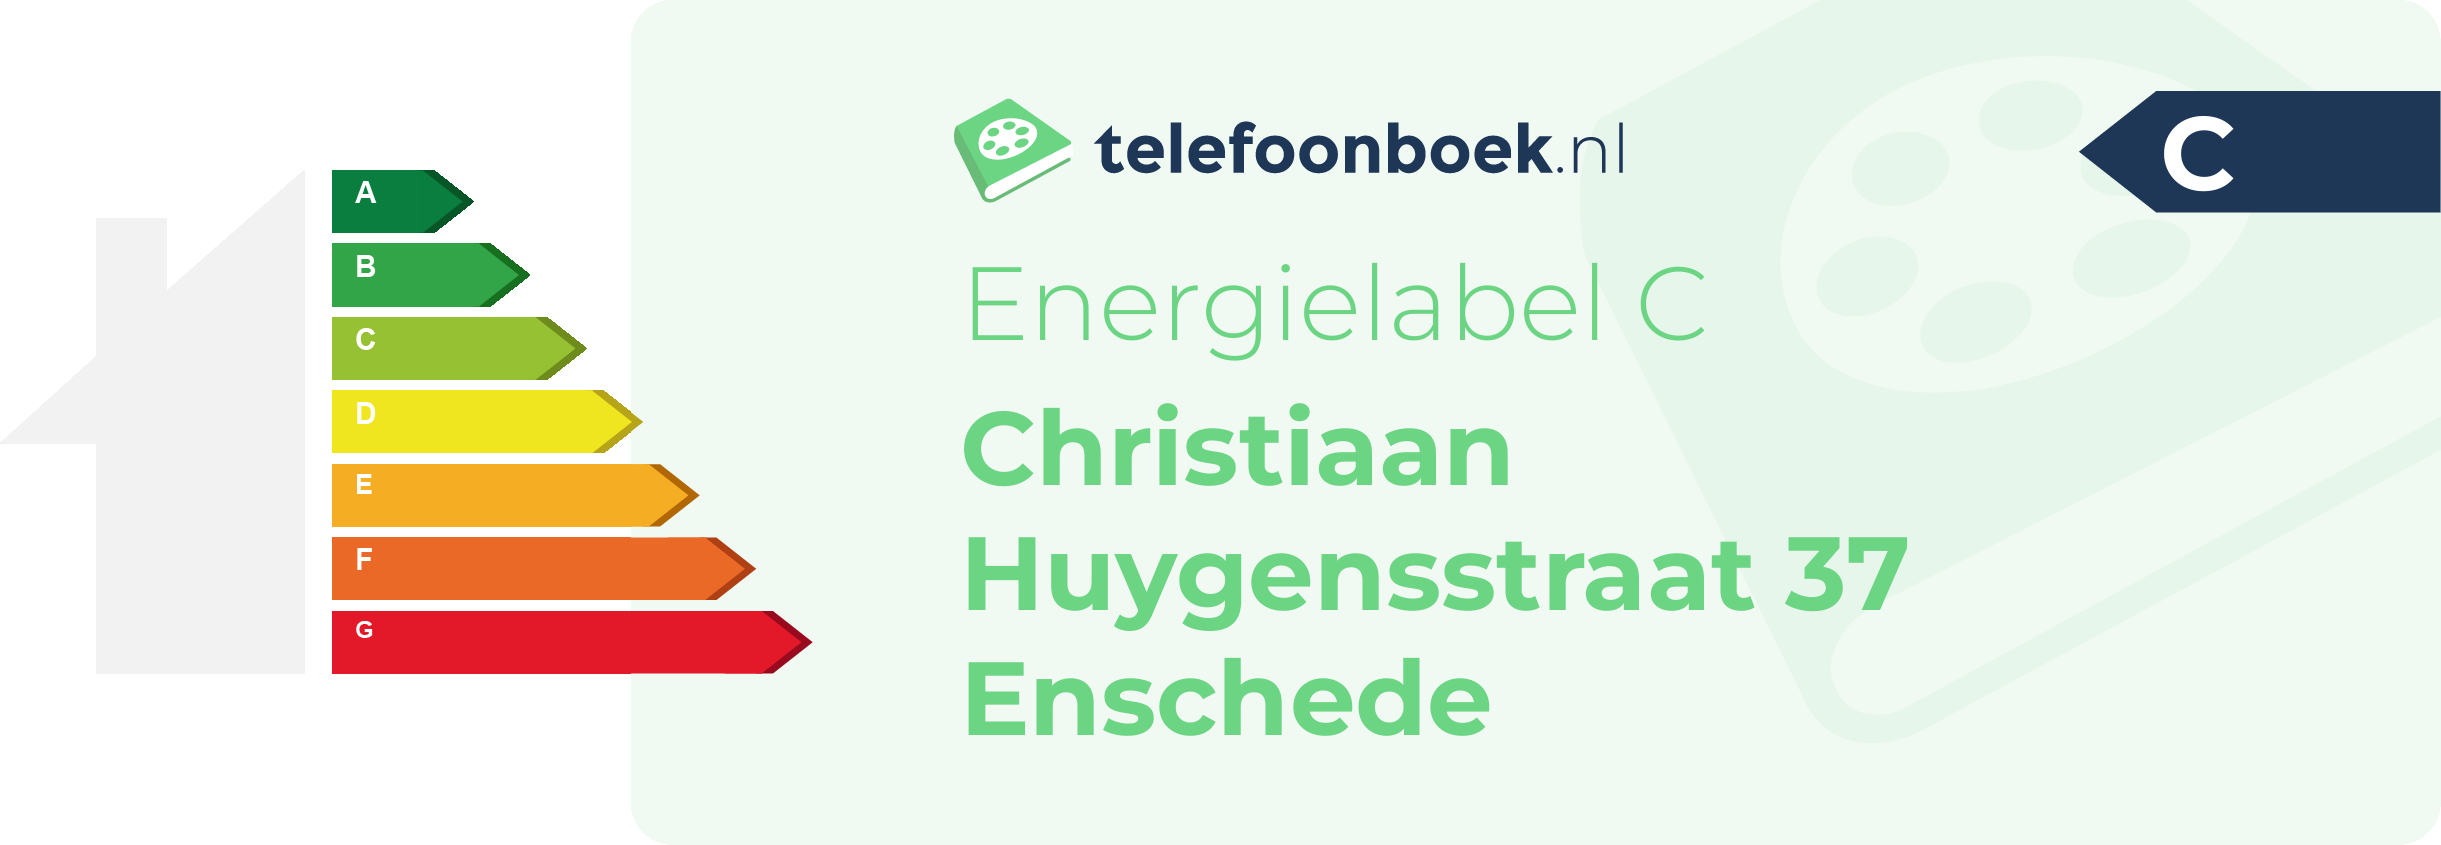 Energielabel Christiaan Huygensstraat 37 Enschede